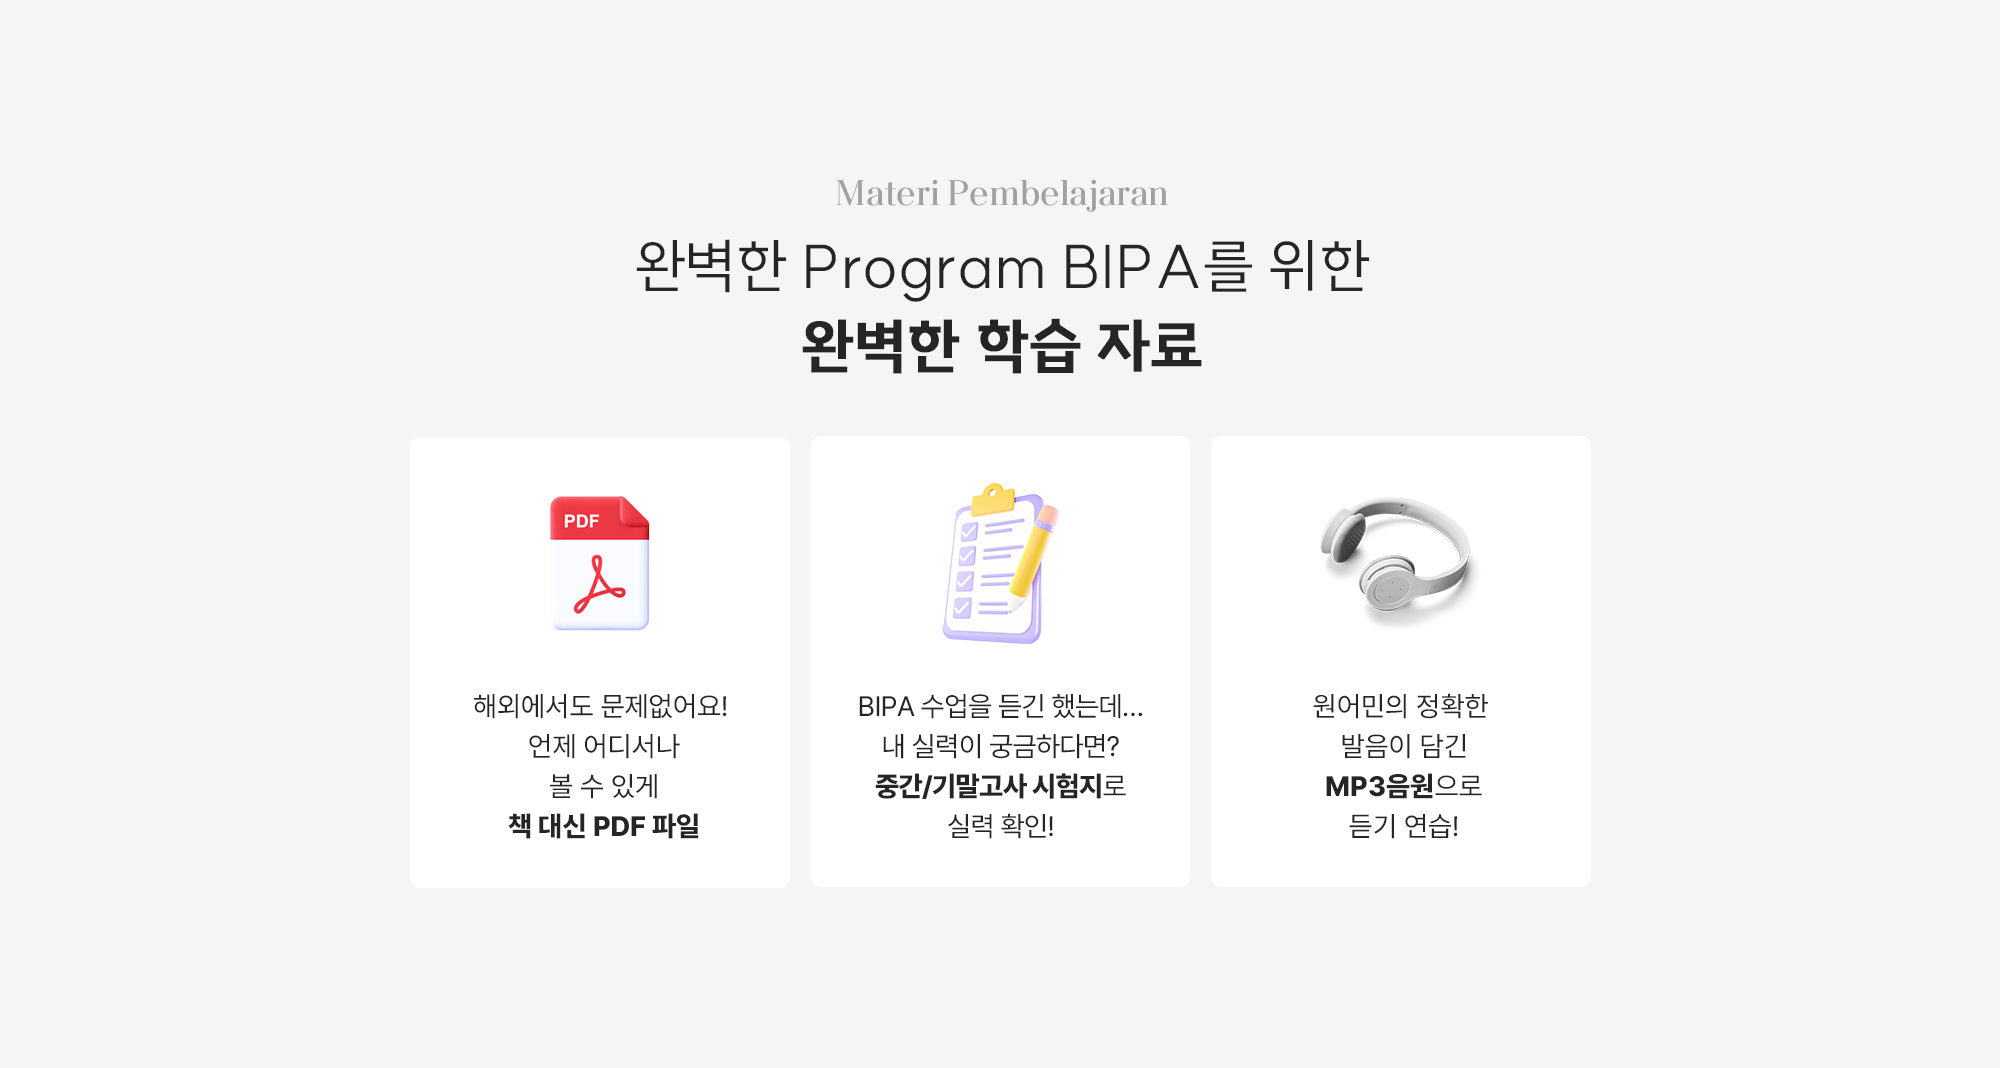 완벽한 BIPA Program을 위한 완벽한 학습 자료